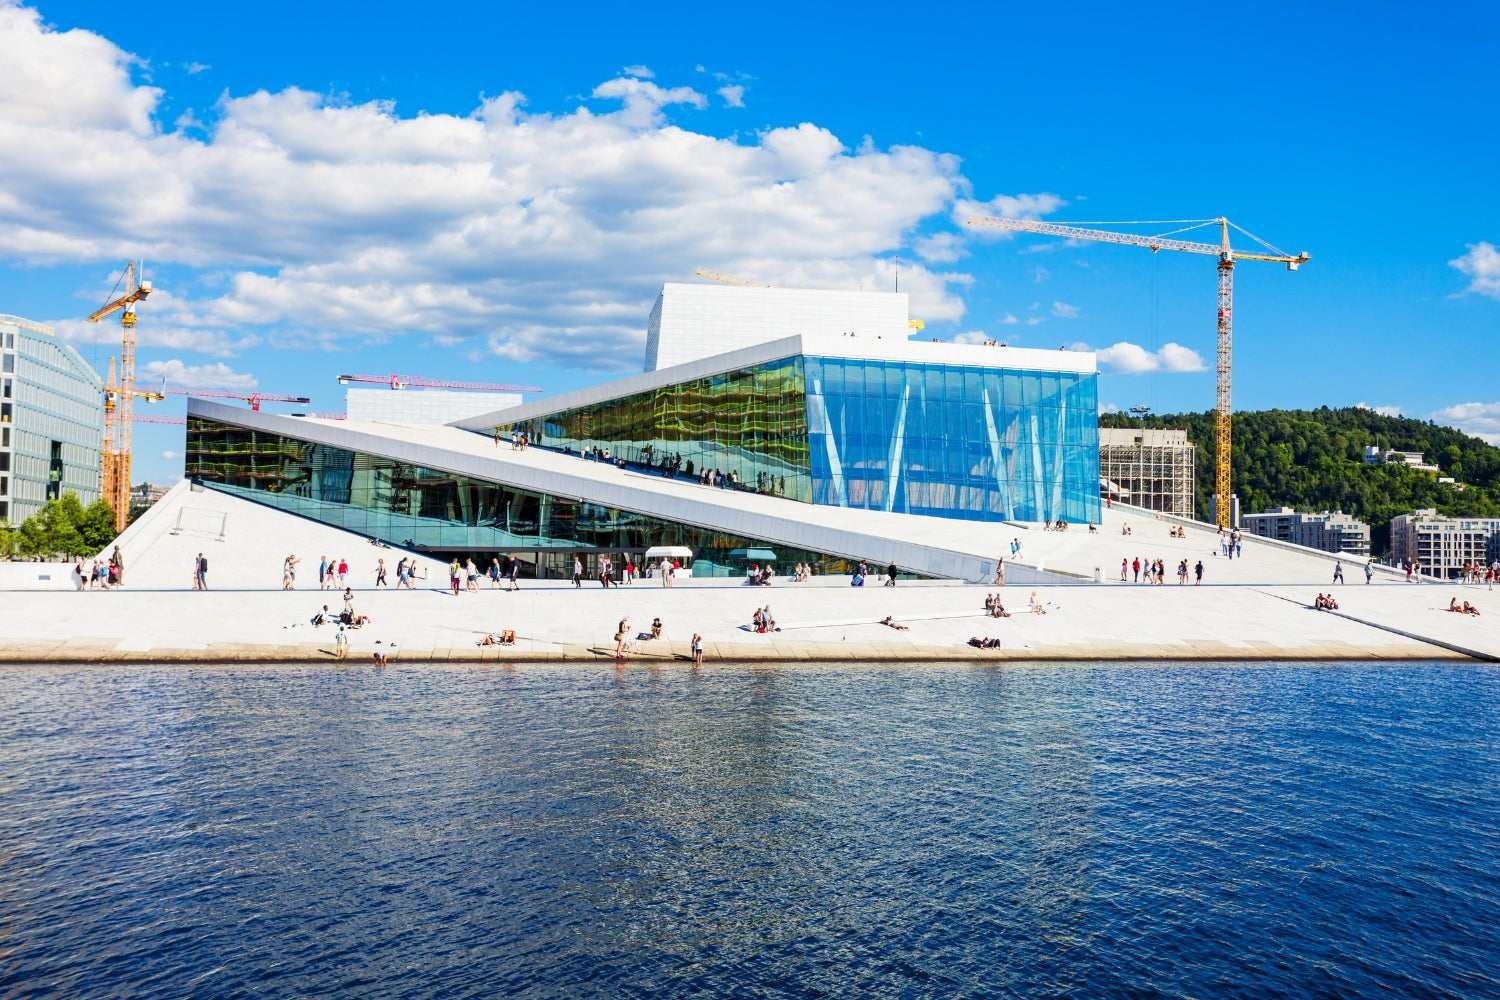 Oslo Norway